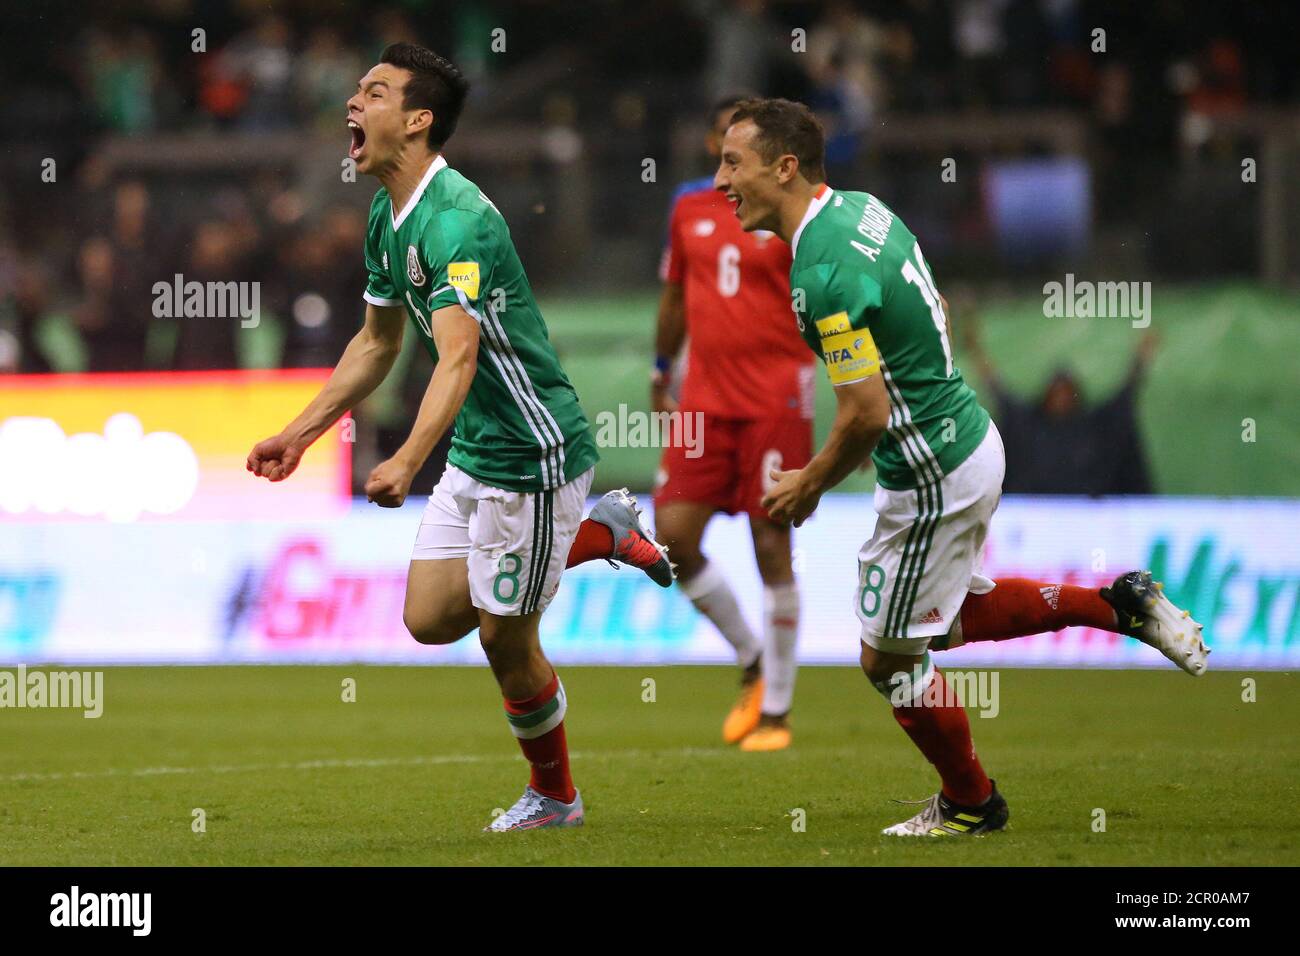 Calcio - Messico contro Panama - Campionato del mondo 2018 Qualificatori -  Stadio Azteca, Città del Messico, Messico - 1